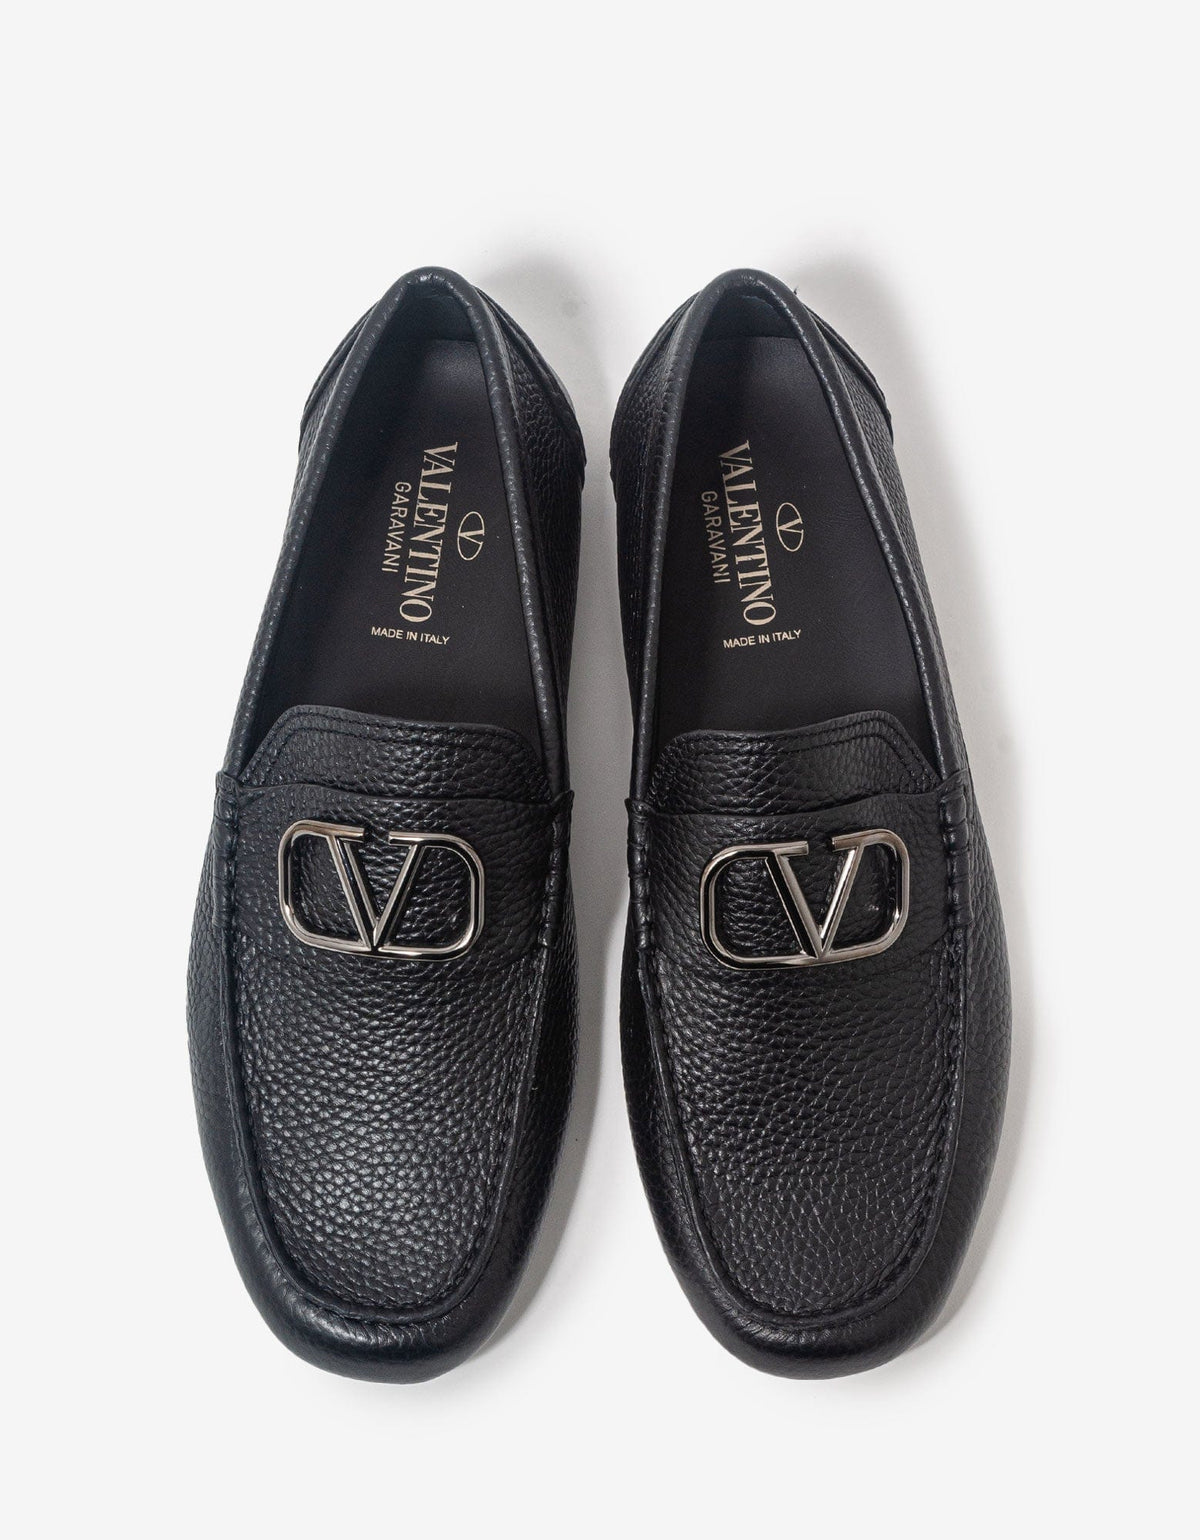 Valentino Garavani Black VLogo Driving Shoes